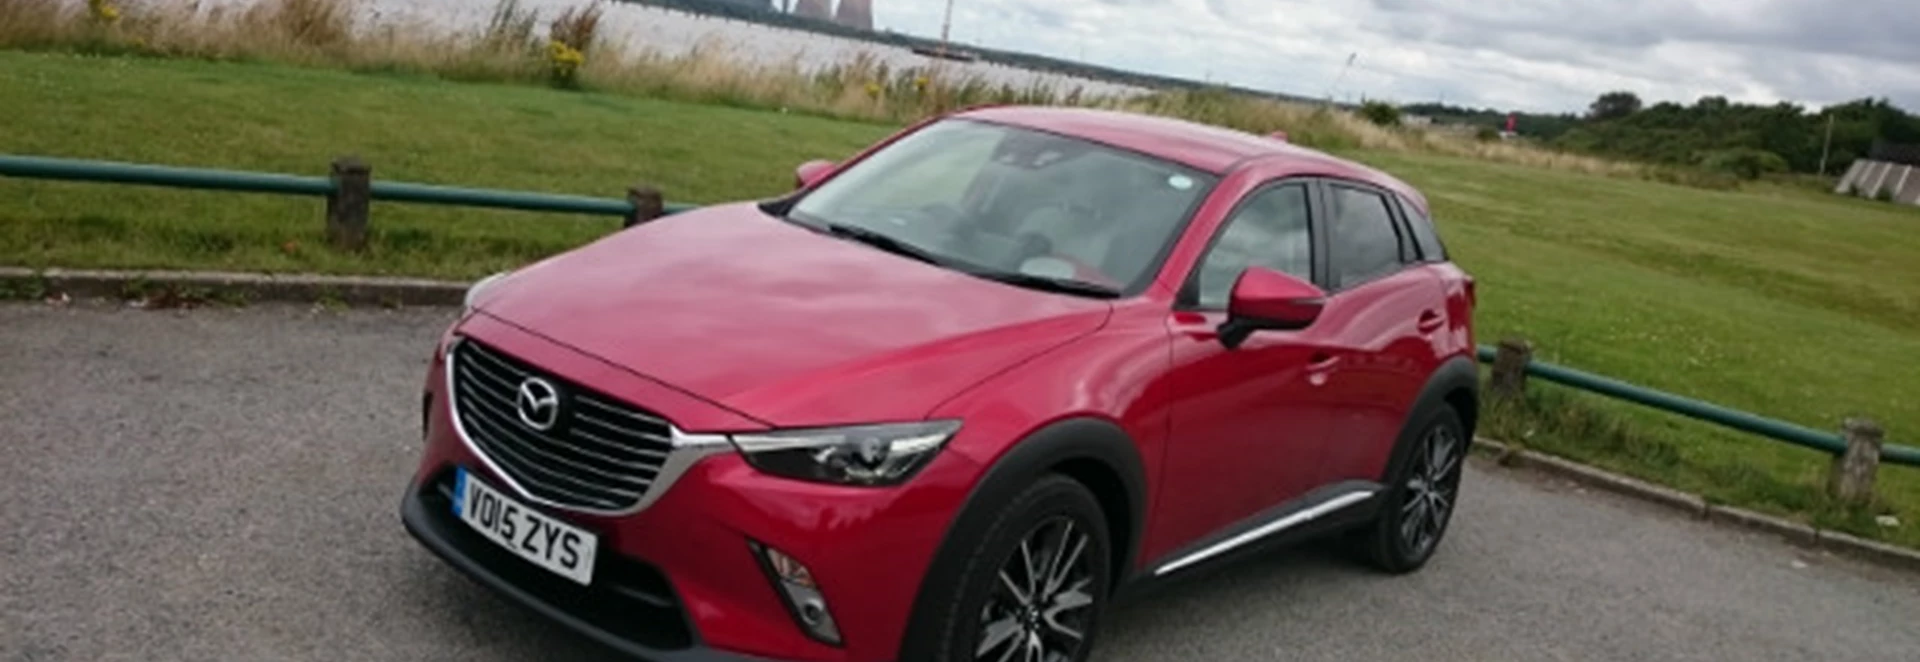 Mazda CX-3 2.0-litre 118bhp Sport Nav launch report